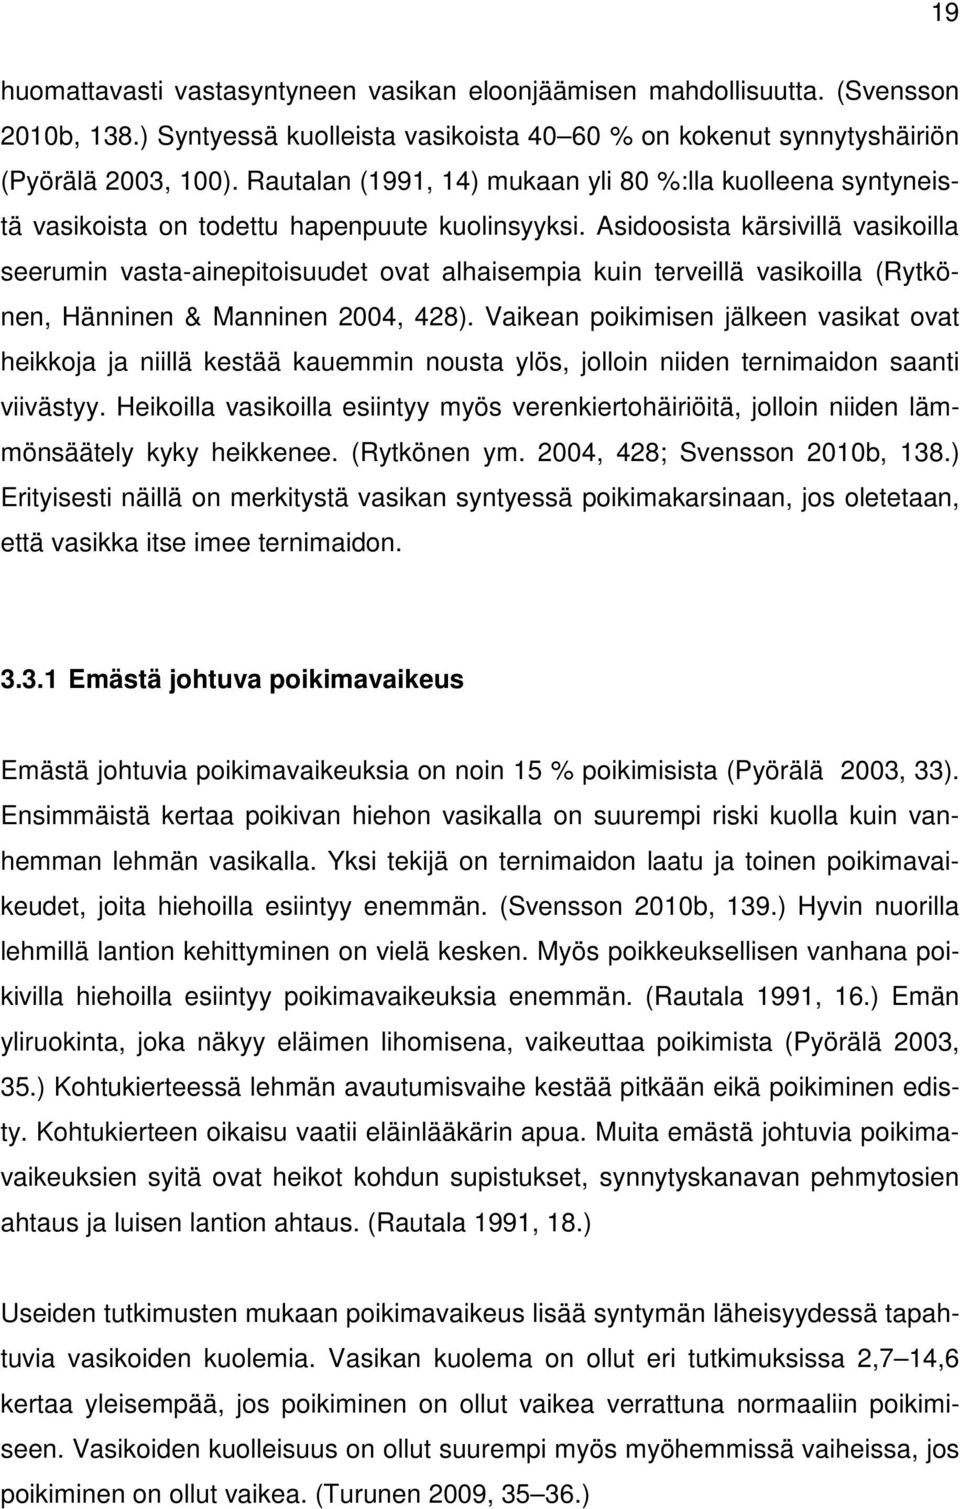 Asidoosista kärsivillä vasikoilla seerumin vasta-ainepitoisuudet ovat alhaisempia kuin terveillä vasikoilla (Rytkönen, Hänninen & Manninen 2004, 428).